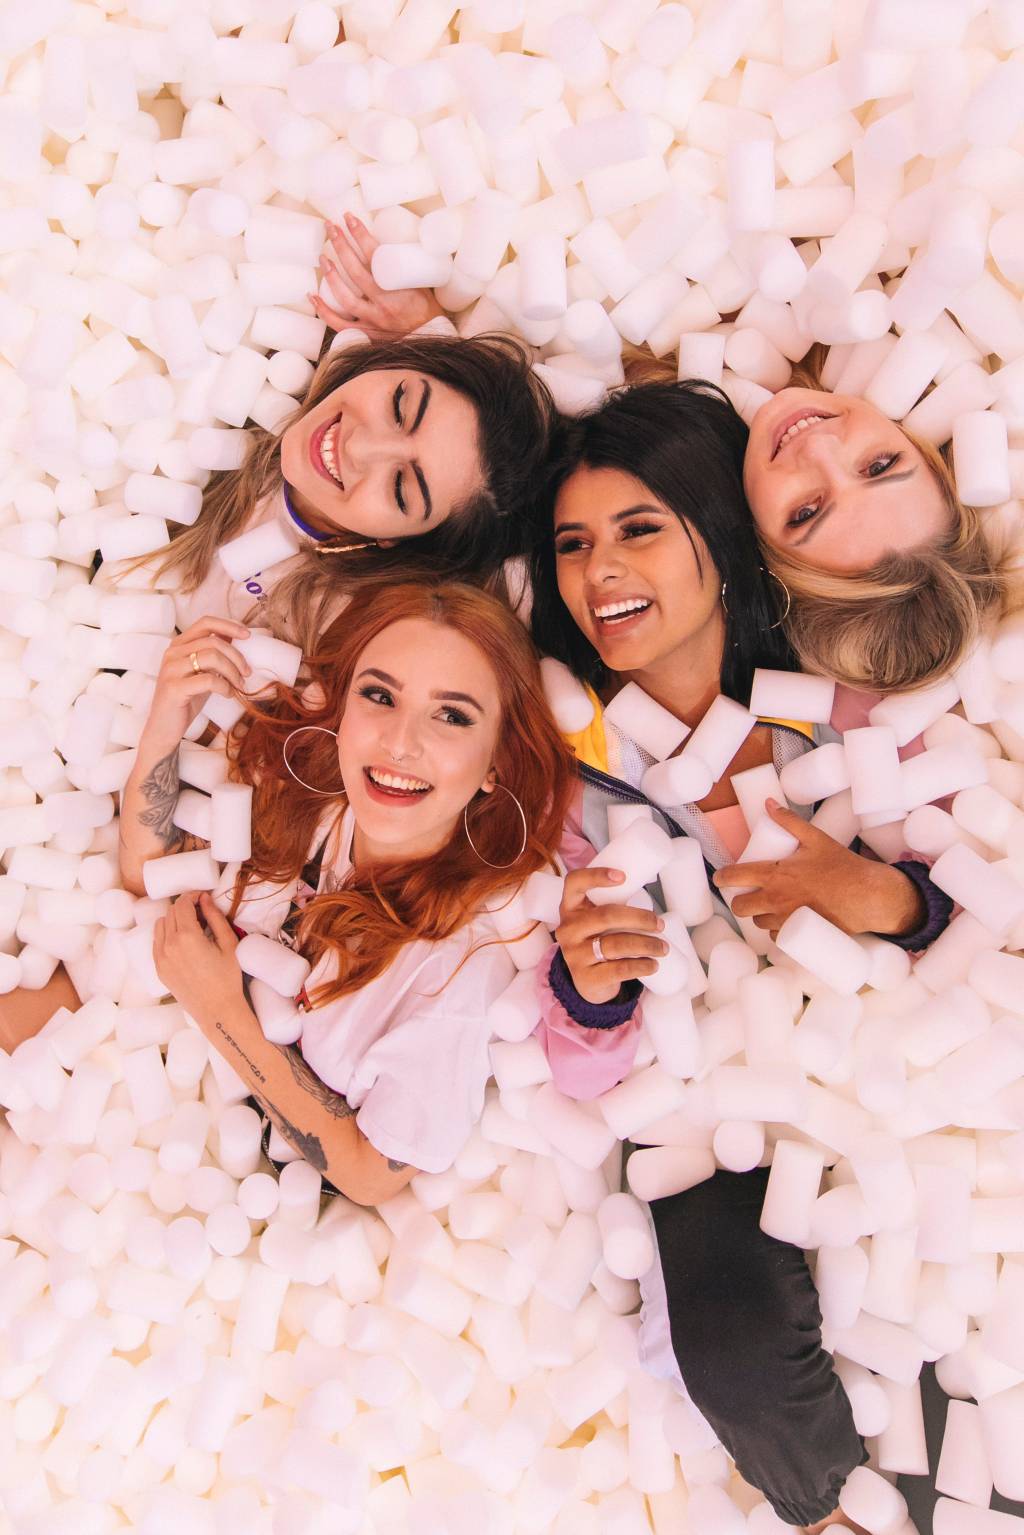 Quatro moças sorriem para a câmera cobertas por marshmallows de mentira em uma piscina.